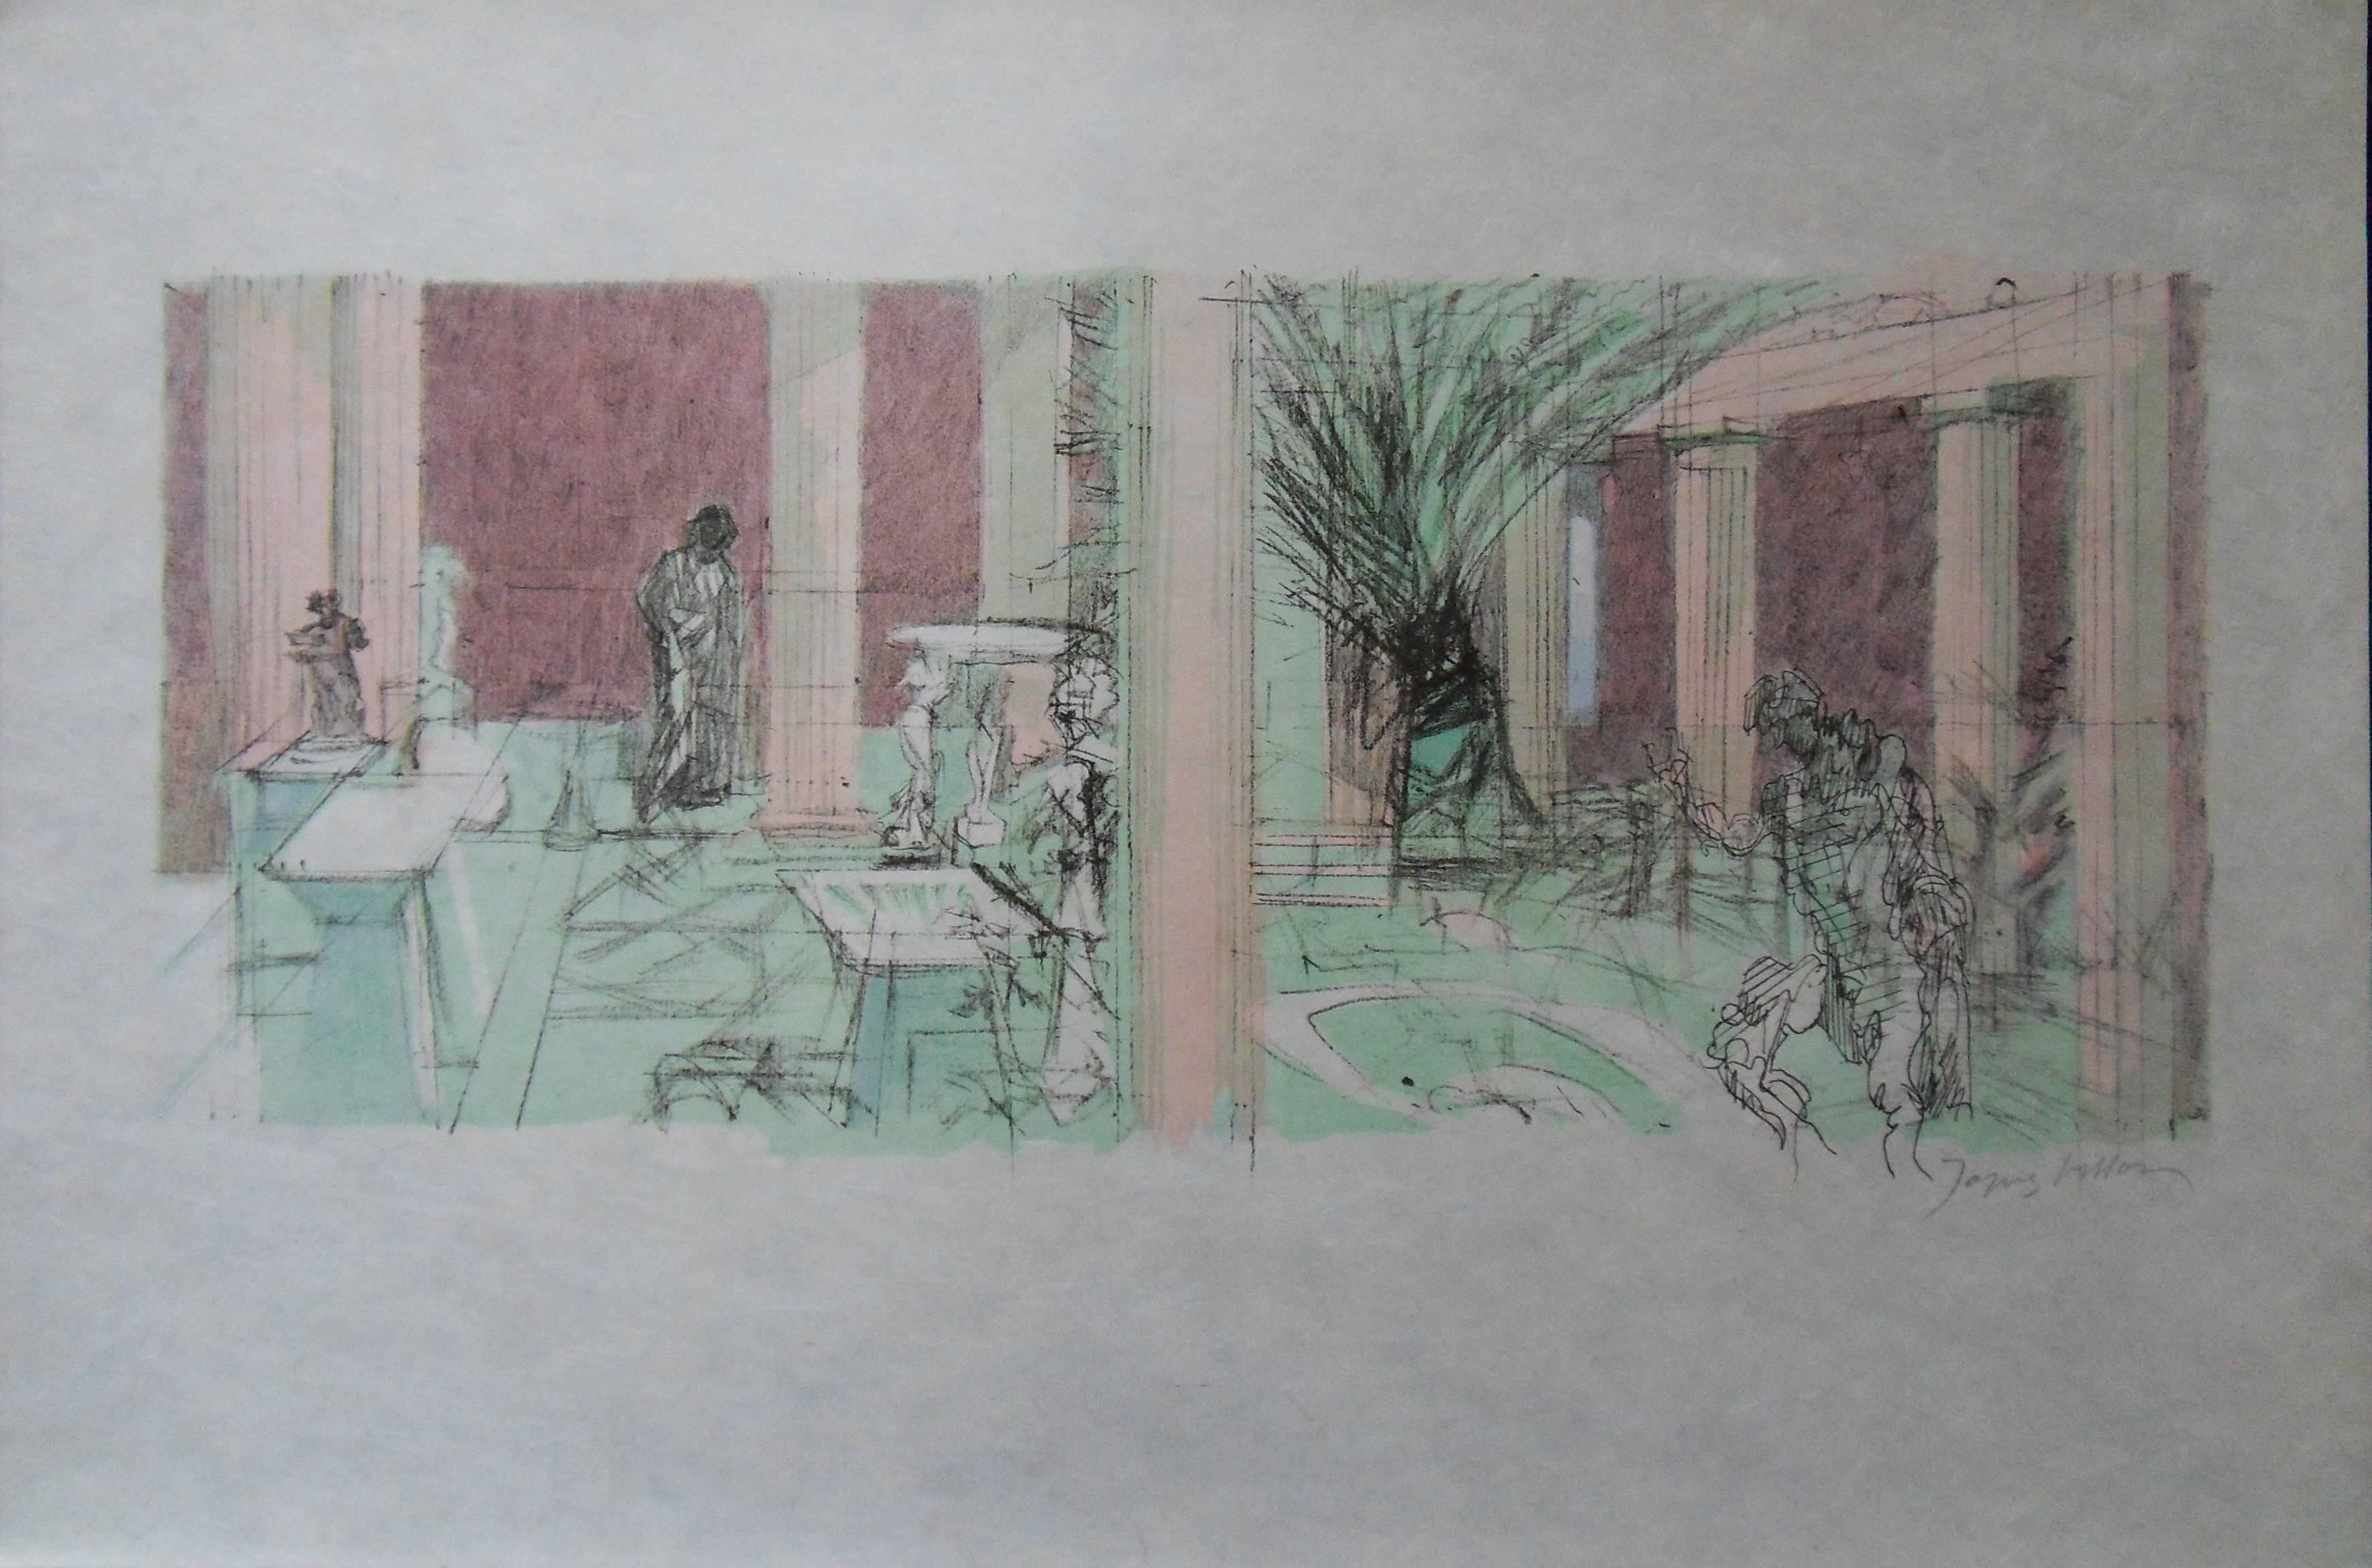 Jacques Villon Interior Print - Atrium - Signed lithograph - Mourlot 1953